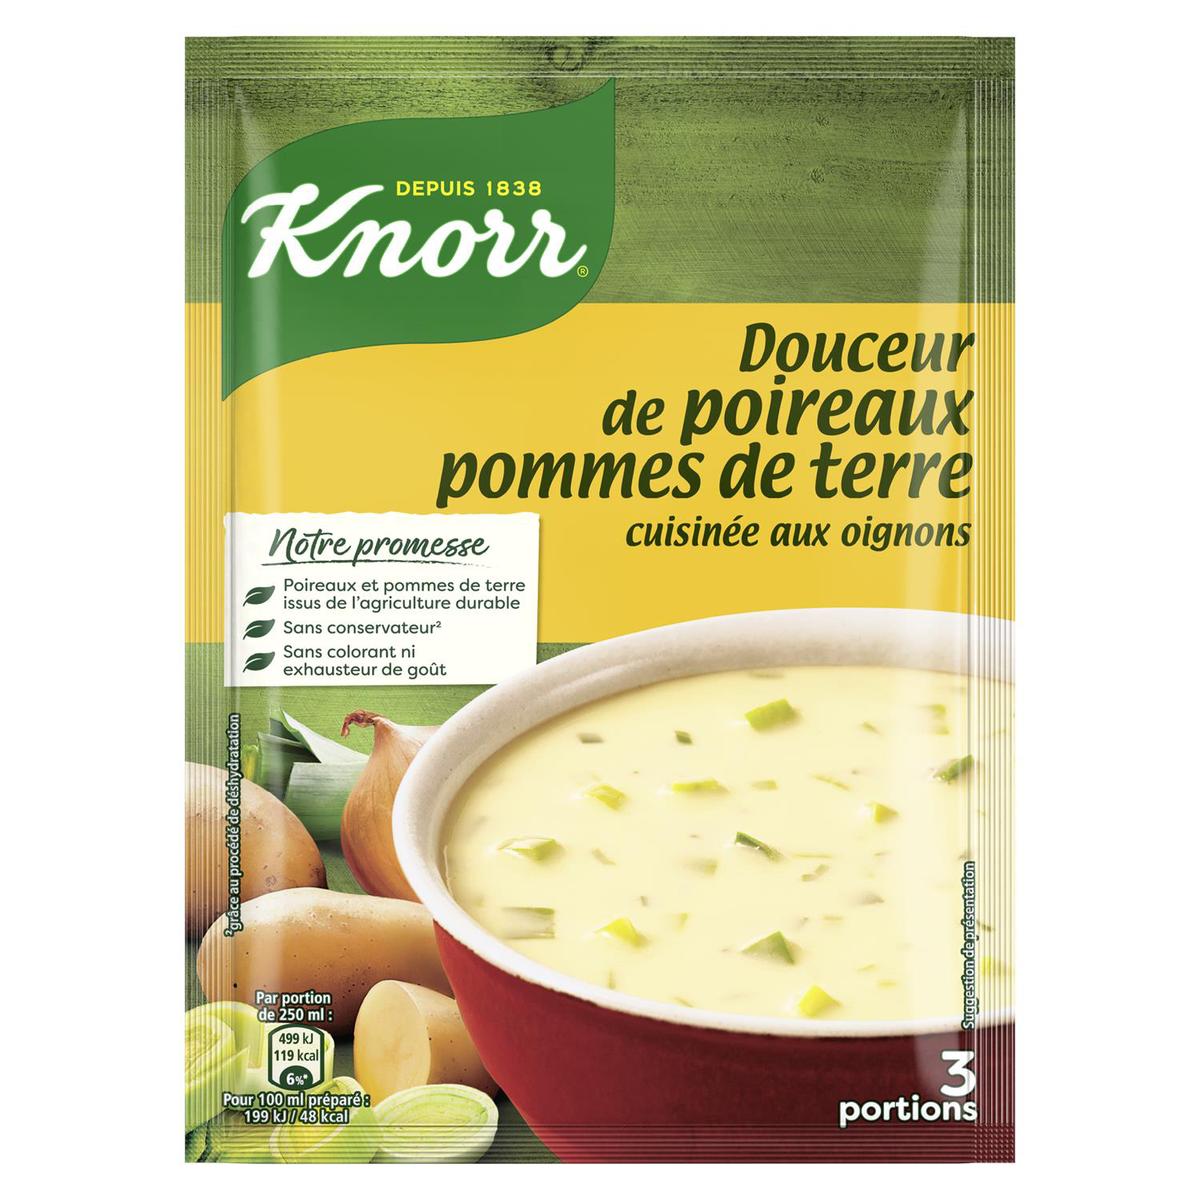 Soupe déshydratée au pistou à l'huile d'olive Knorr - 80g